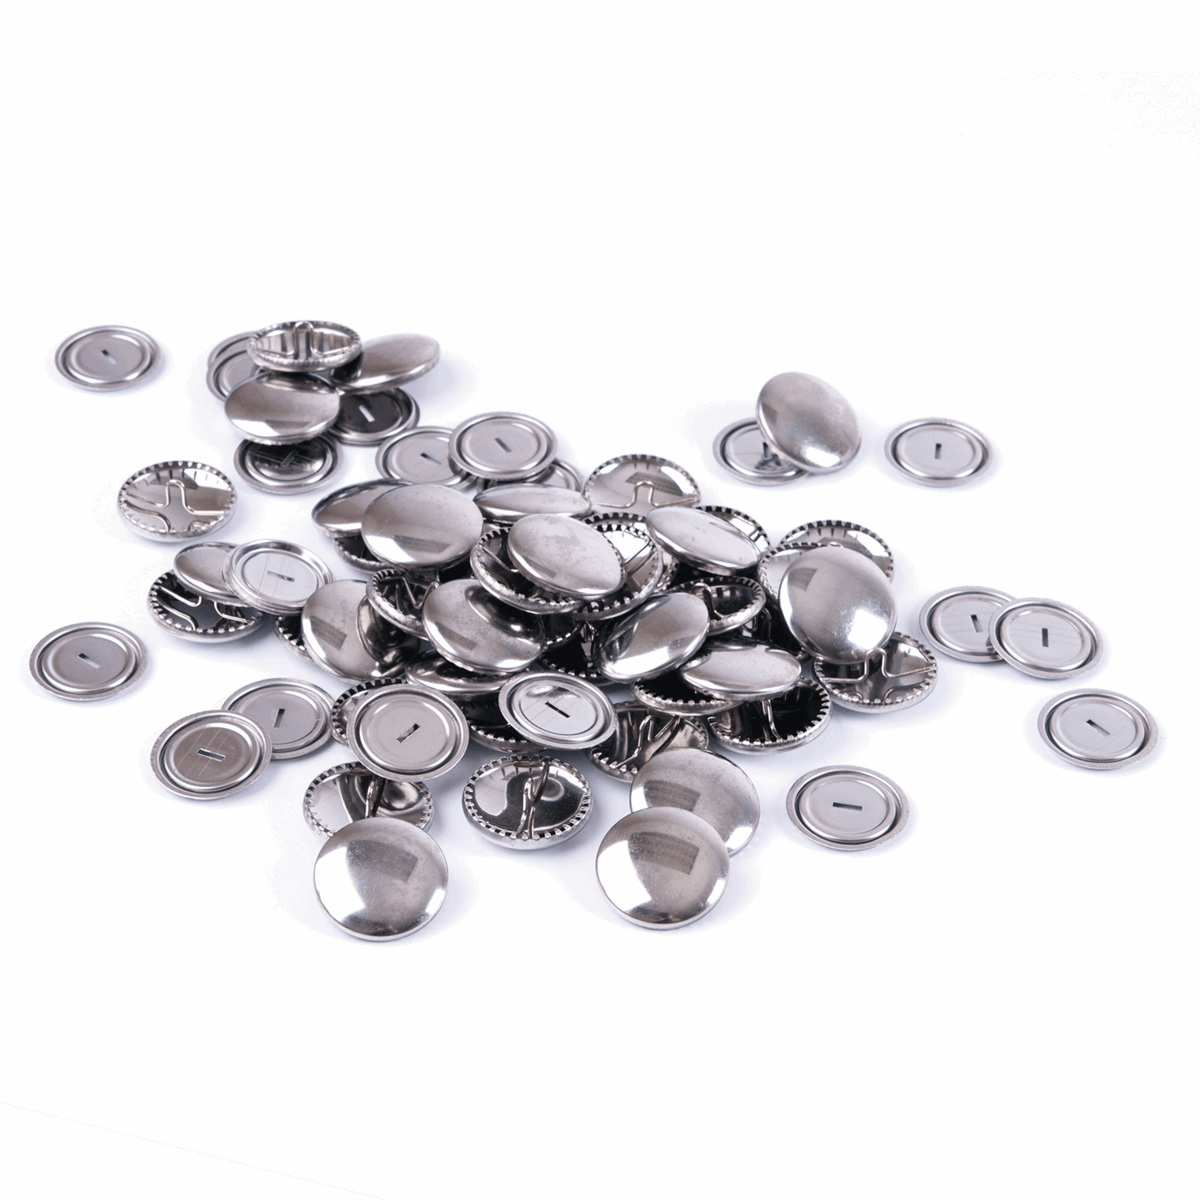 Hemline Self Cover Buttons: Metal: 11 mm, 15 mm, 19 mm, 22 mm, 29mm, 38 mm x 5-100